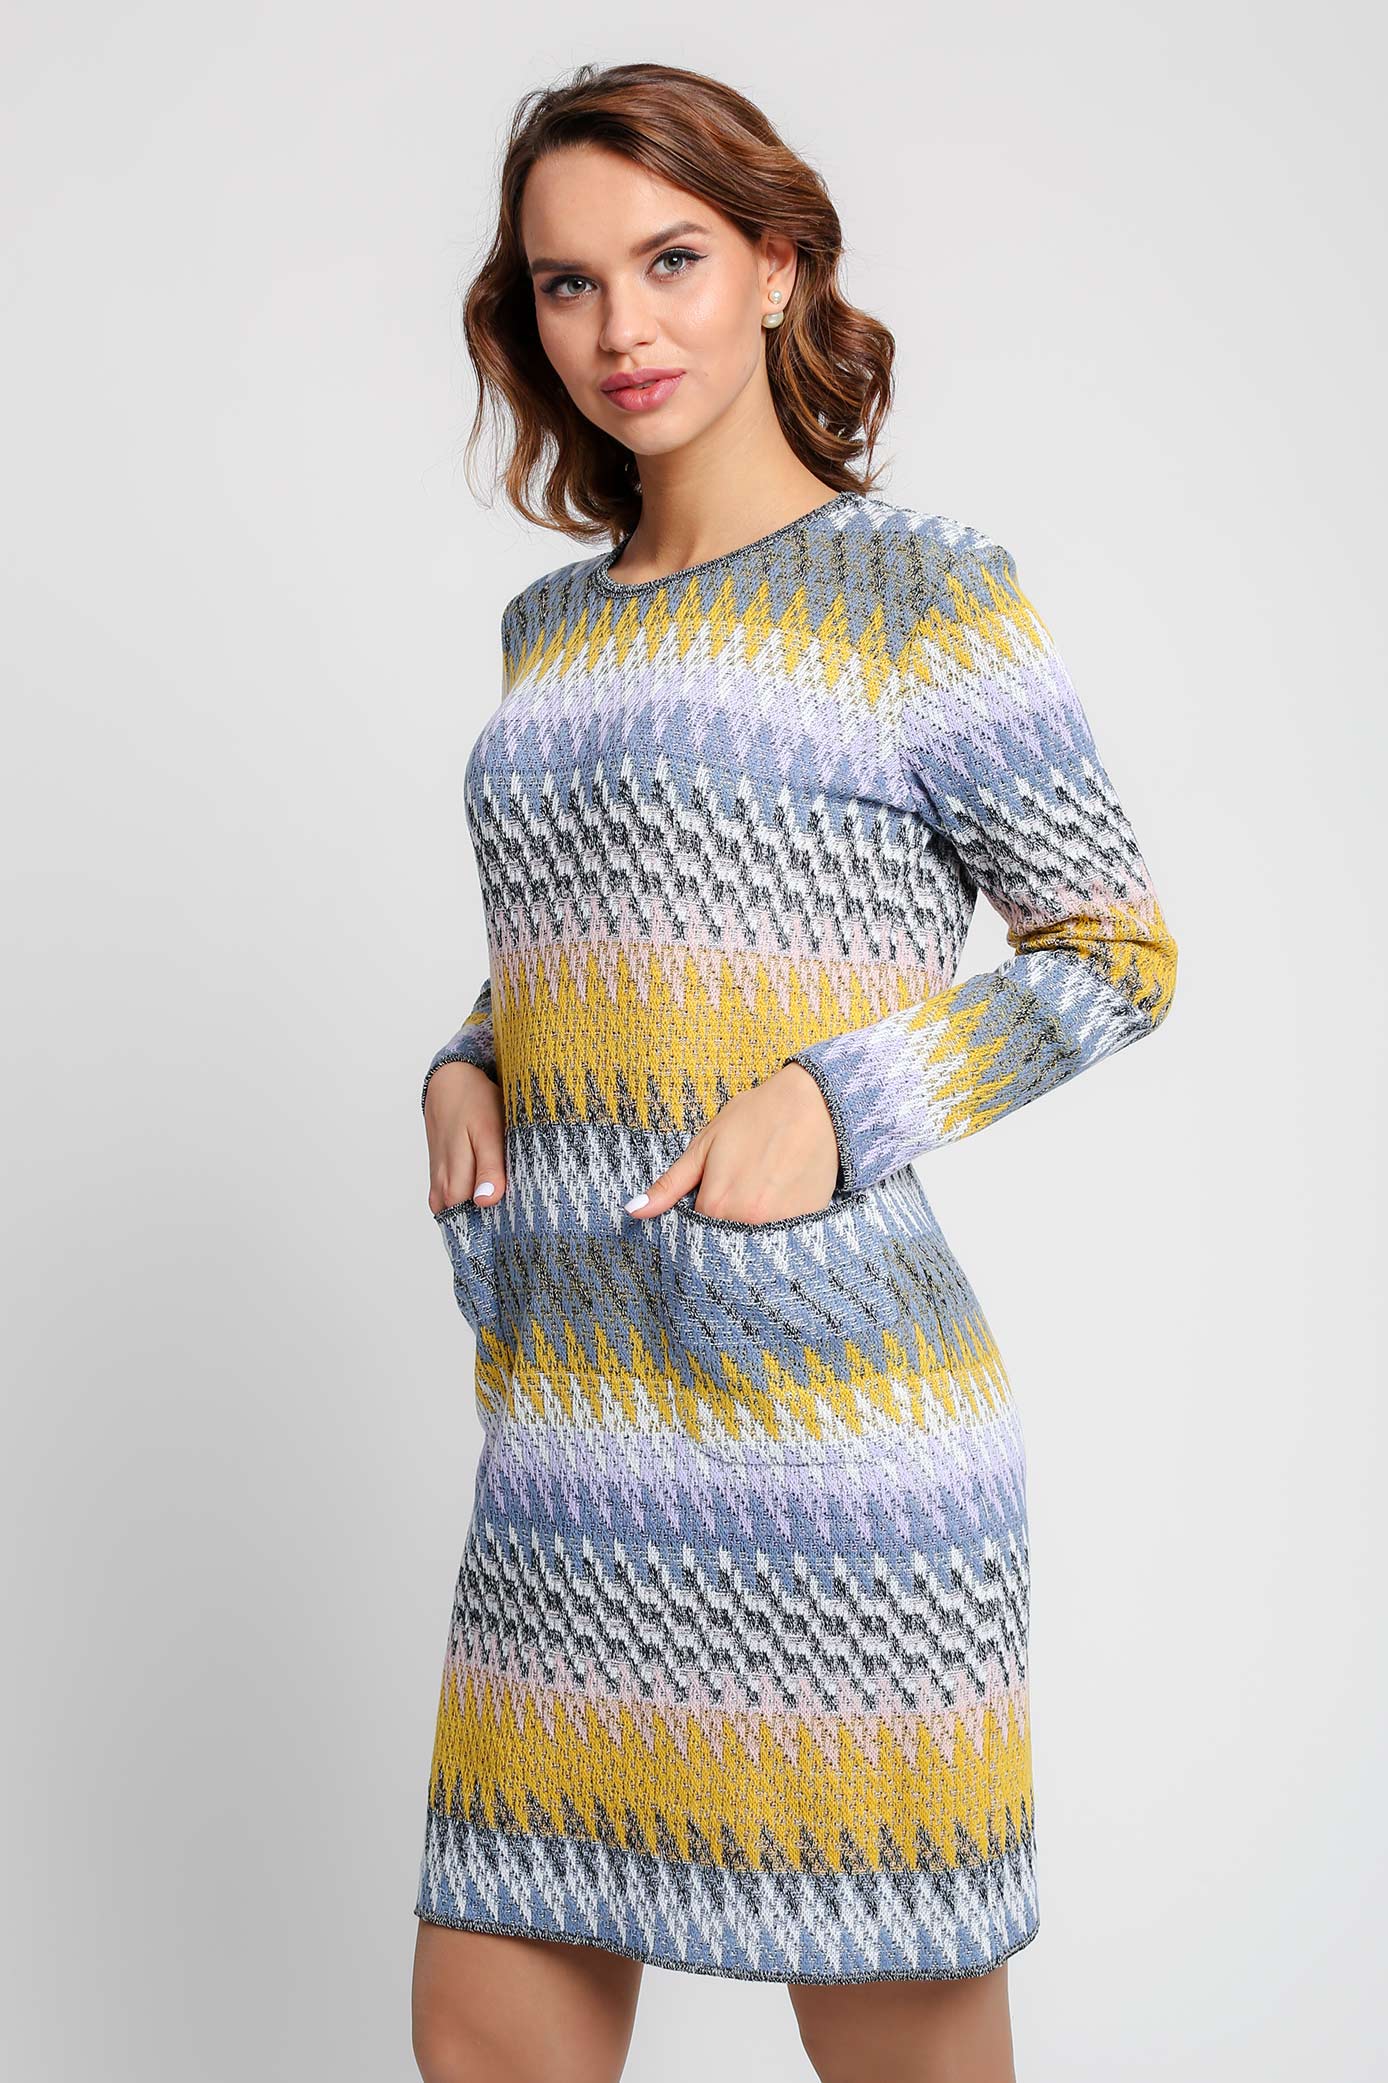 Платье женское Текстильная Мануфактура Д 2964 разноцветное 54 RU